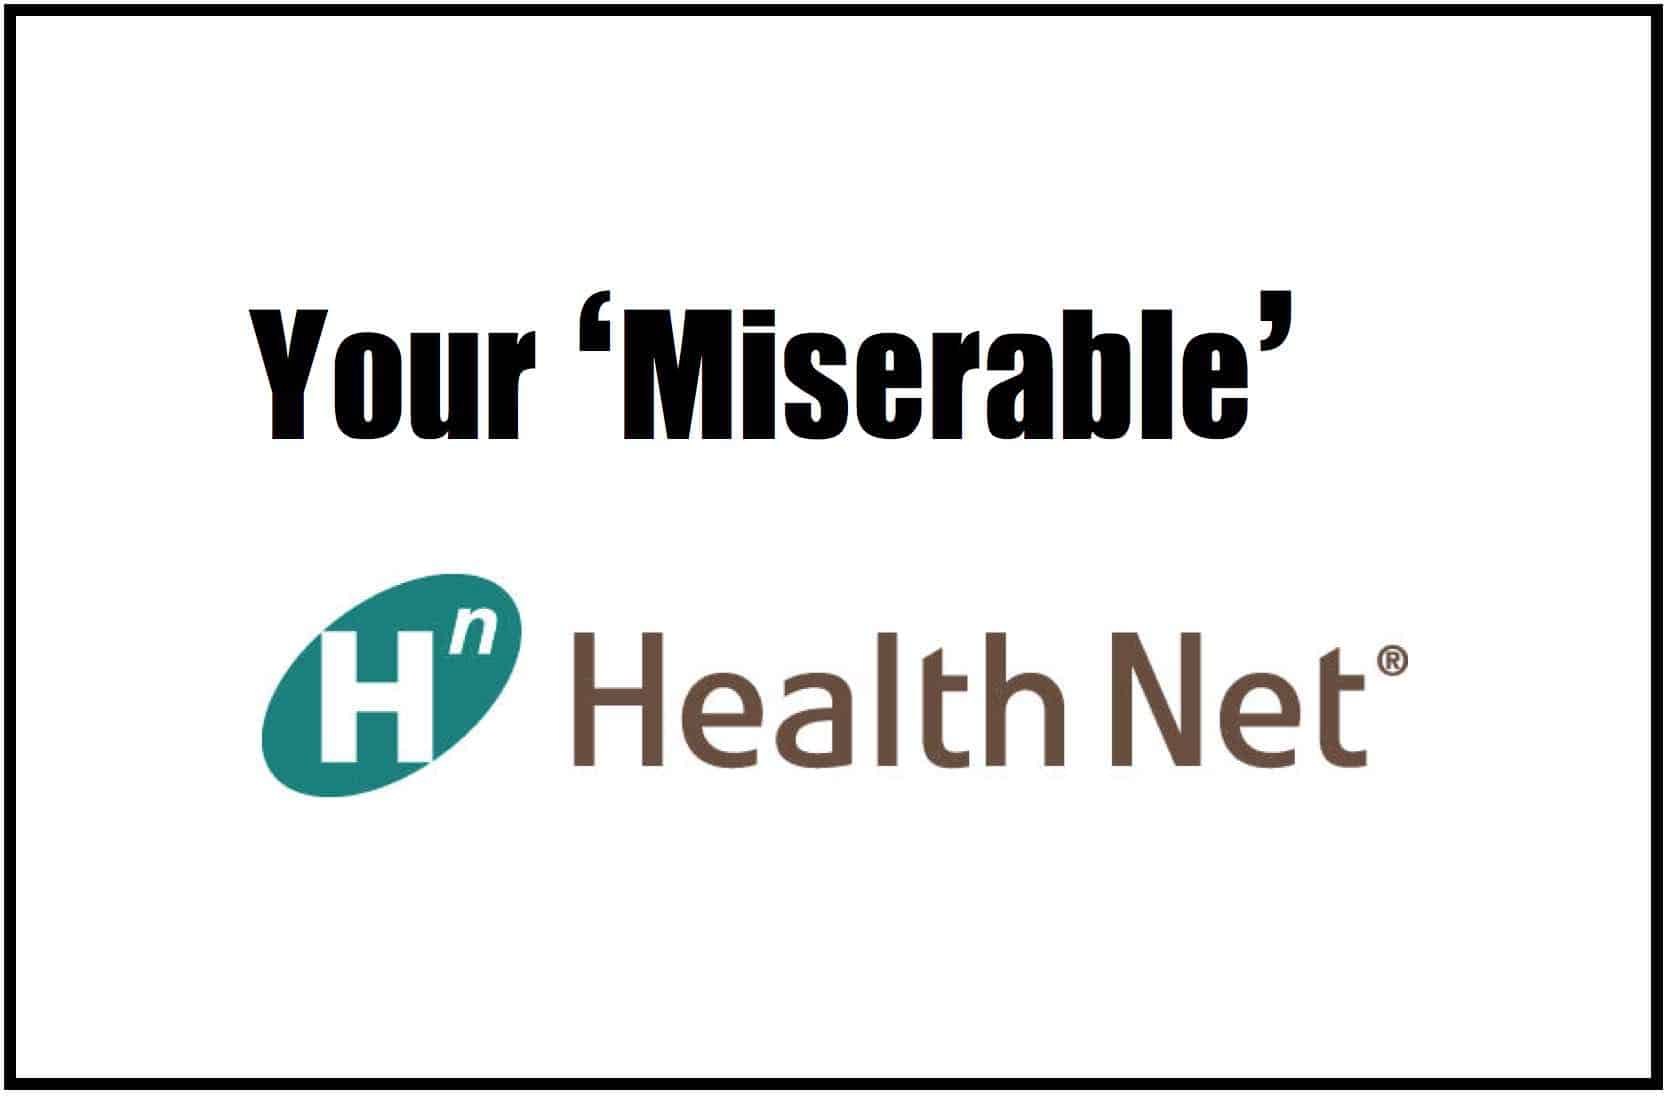 Health Net Miserable